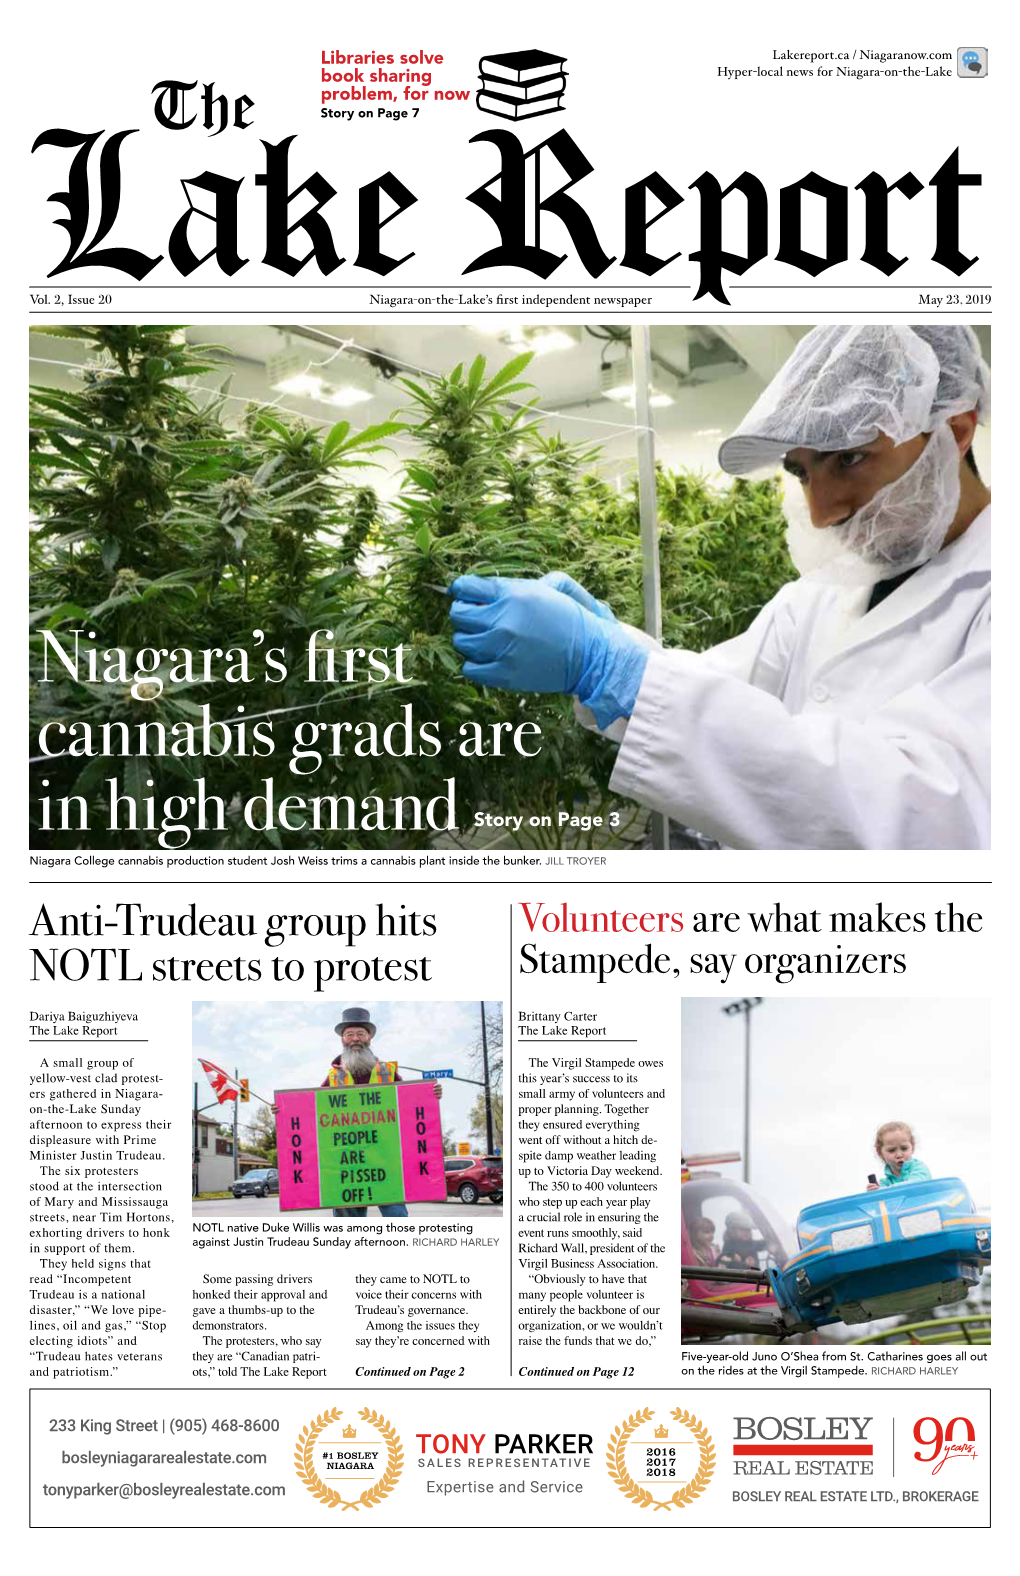 The Niagara's First Cannabis Grads Are in High Demand